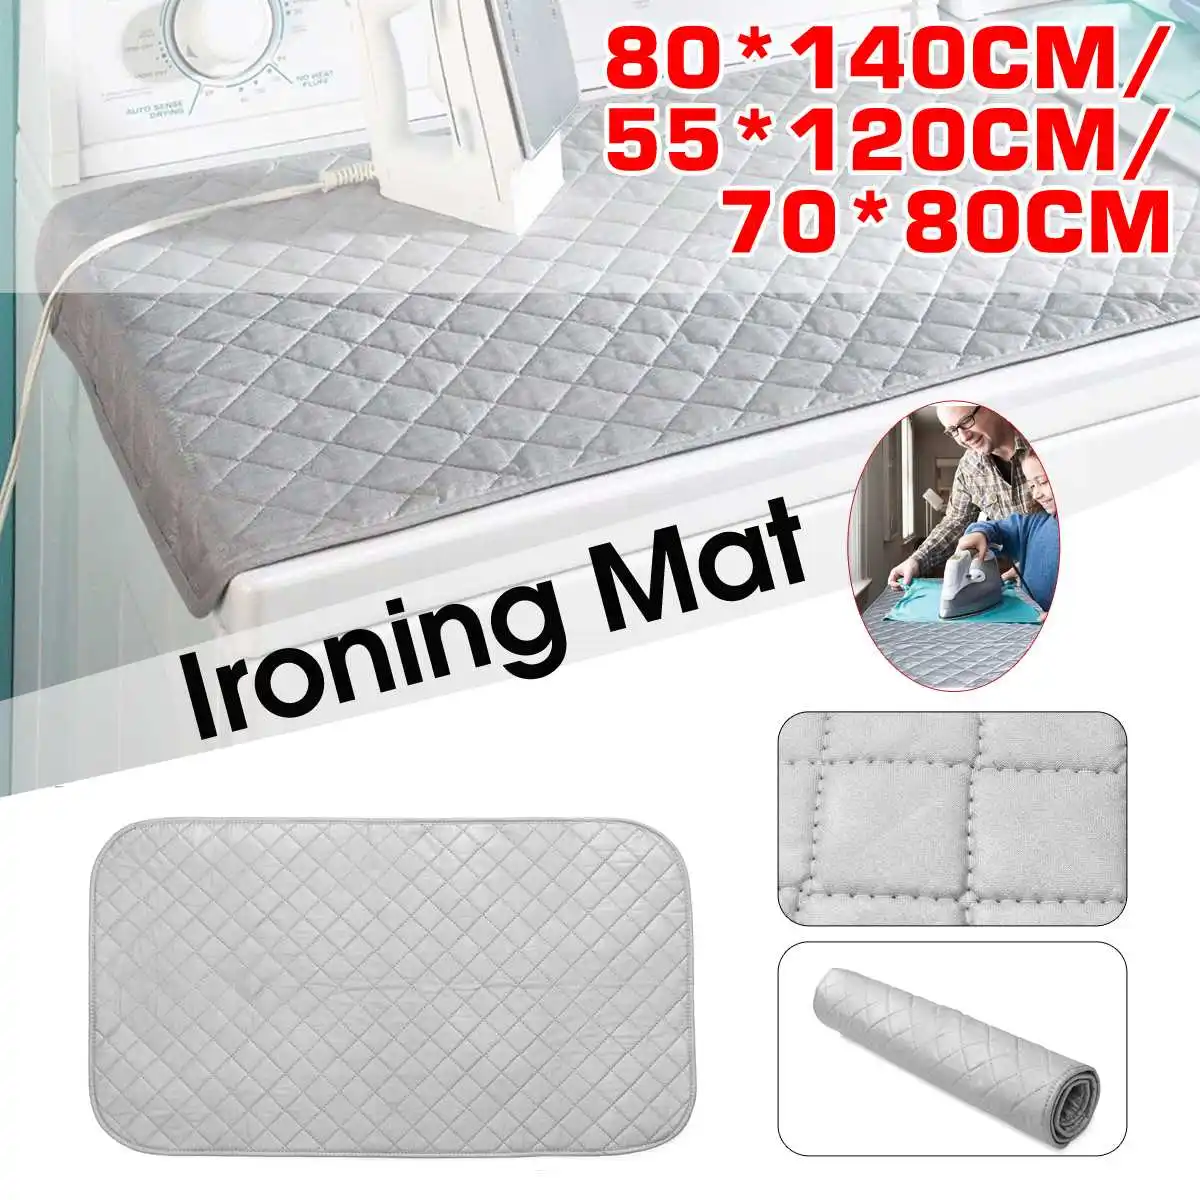 Portable Ironing Mat Blanket (Iron Anywhere) Ironing India